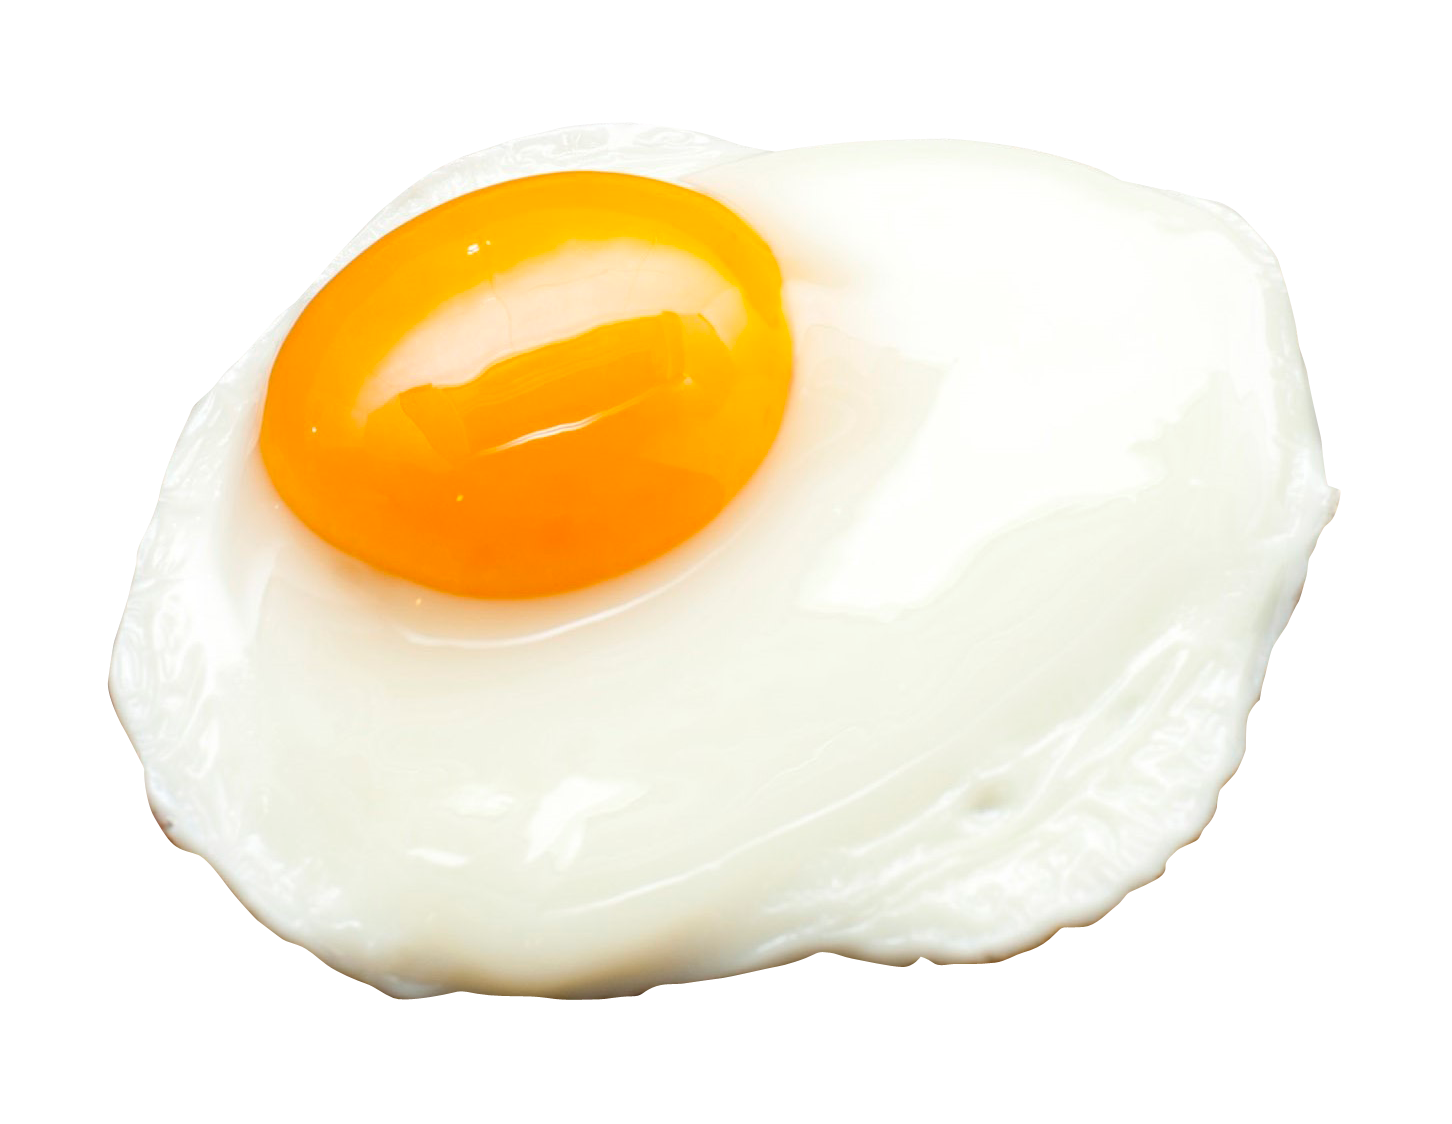 Half Egg Fried Transparent Image